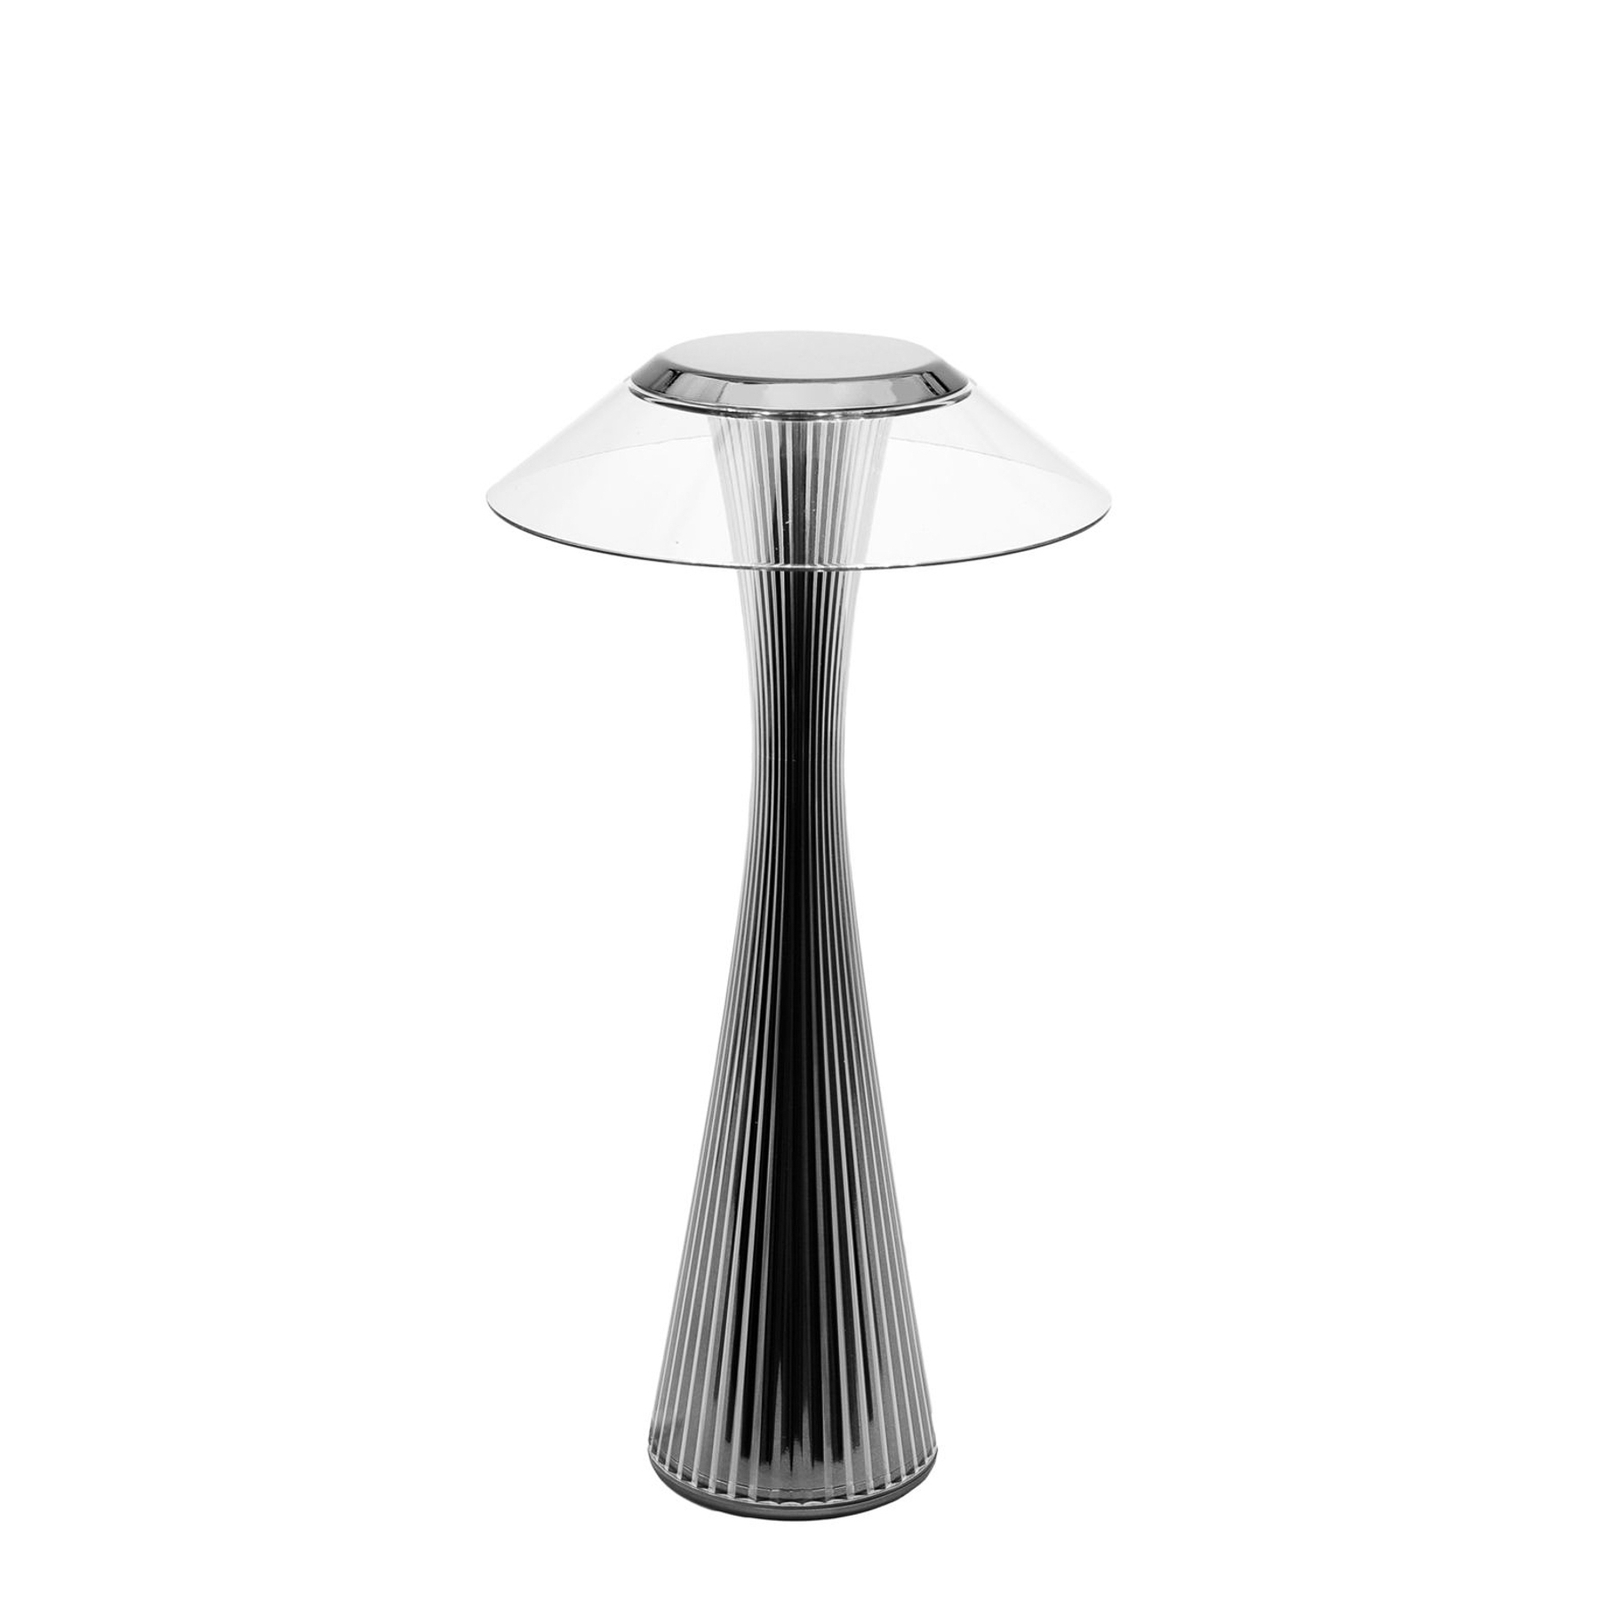 Kartell Space lampada LED da tavolo, titanio